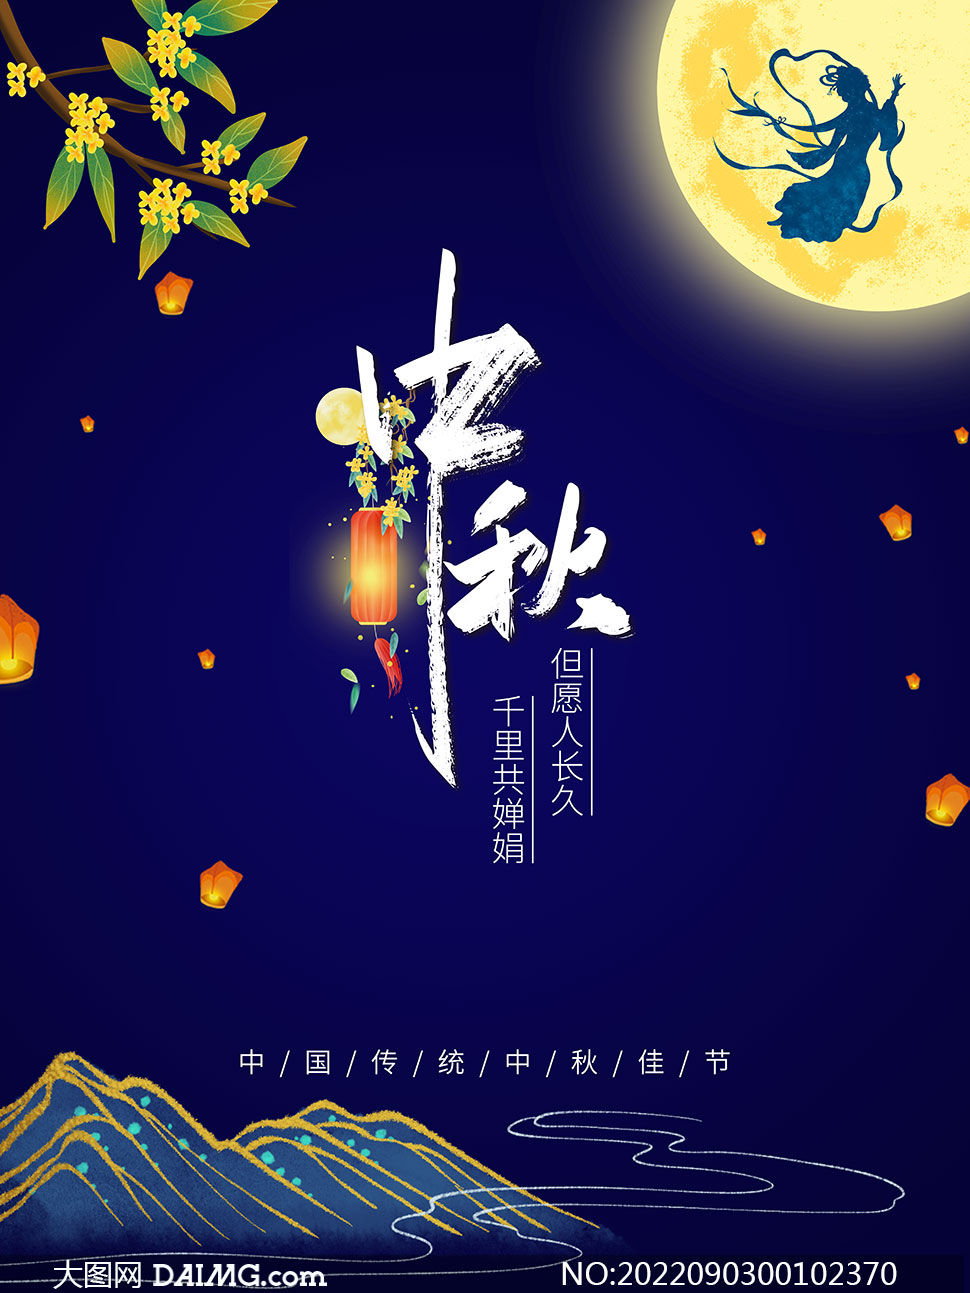 中秋节创意活动海报设计PSD素材